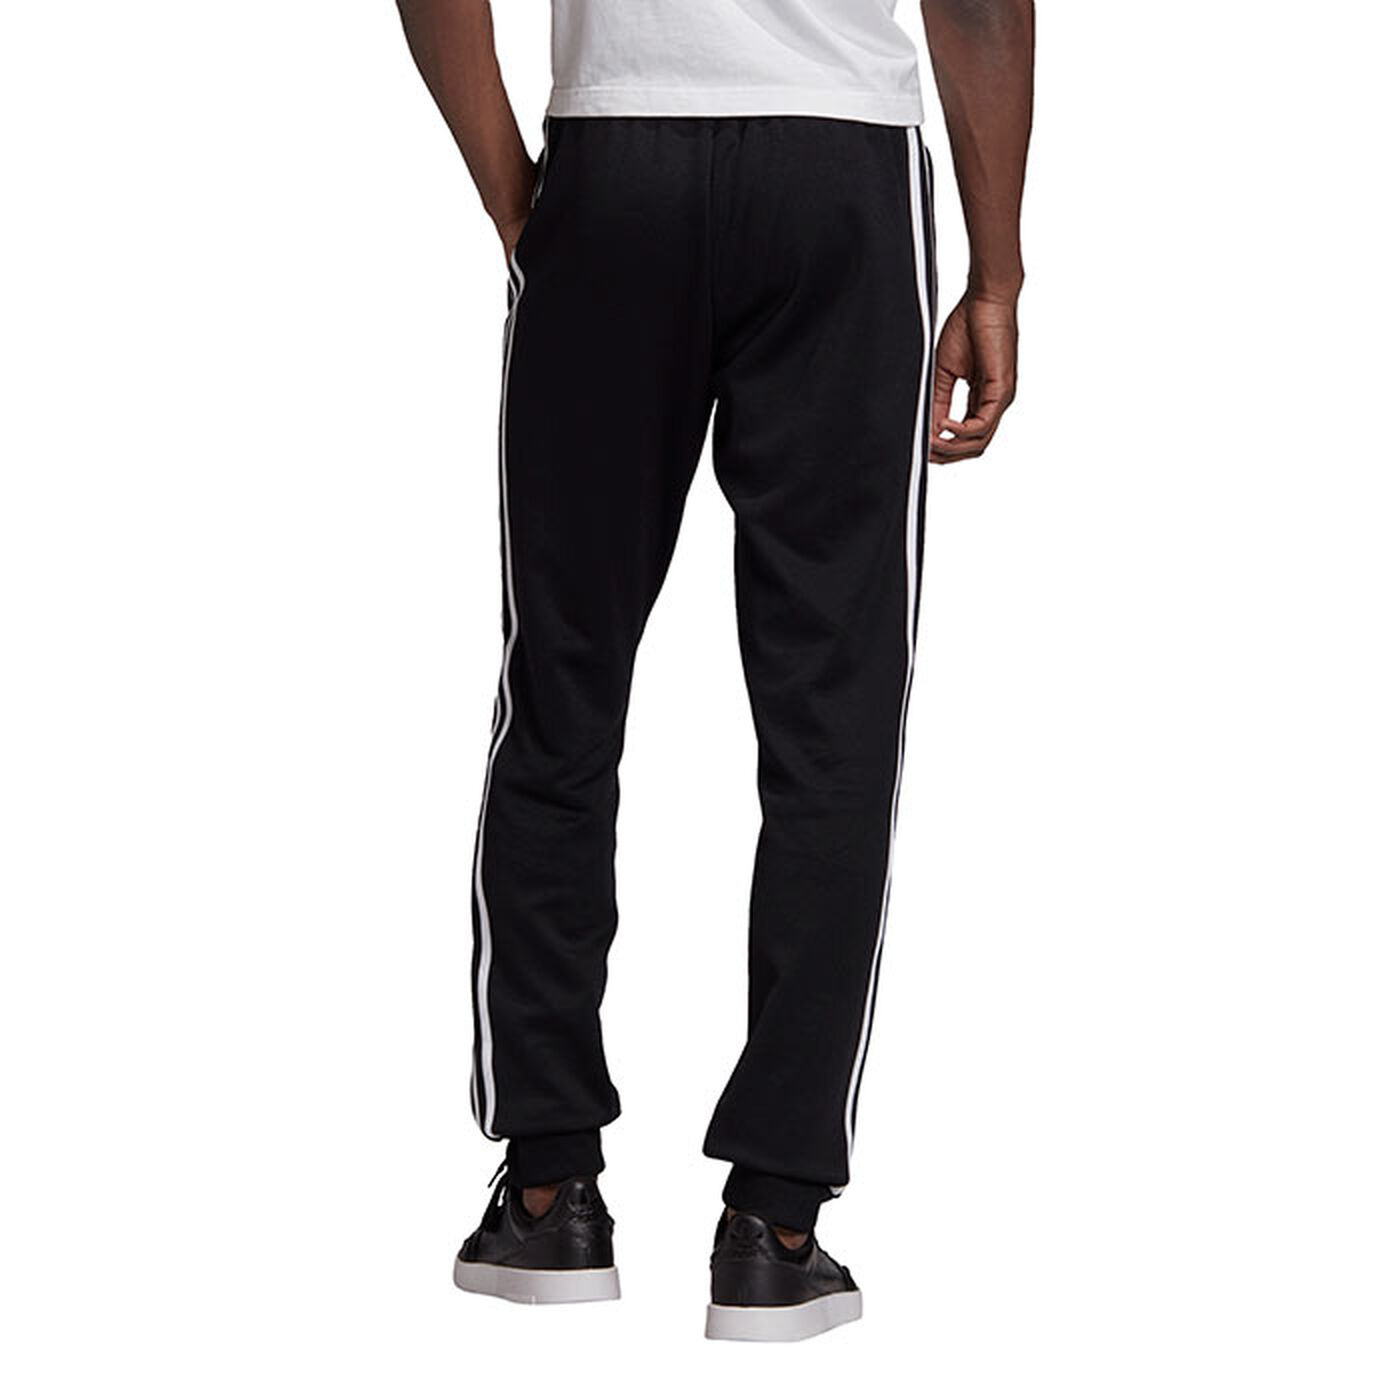 Men's Adicolor Classics Primeblue SST Track Pant | adidas Originals ...